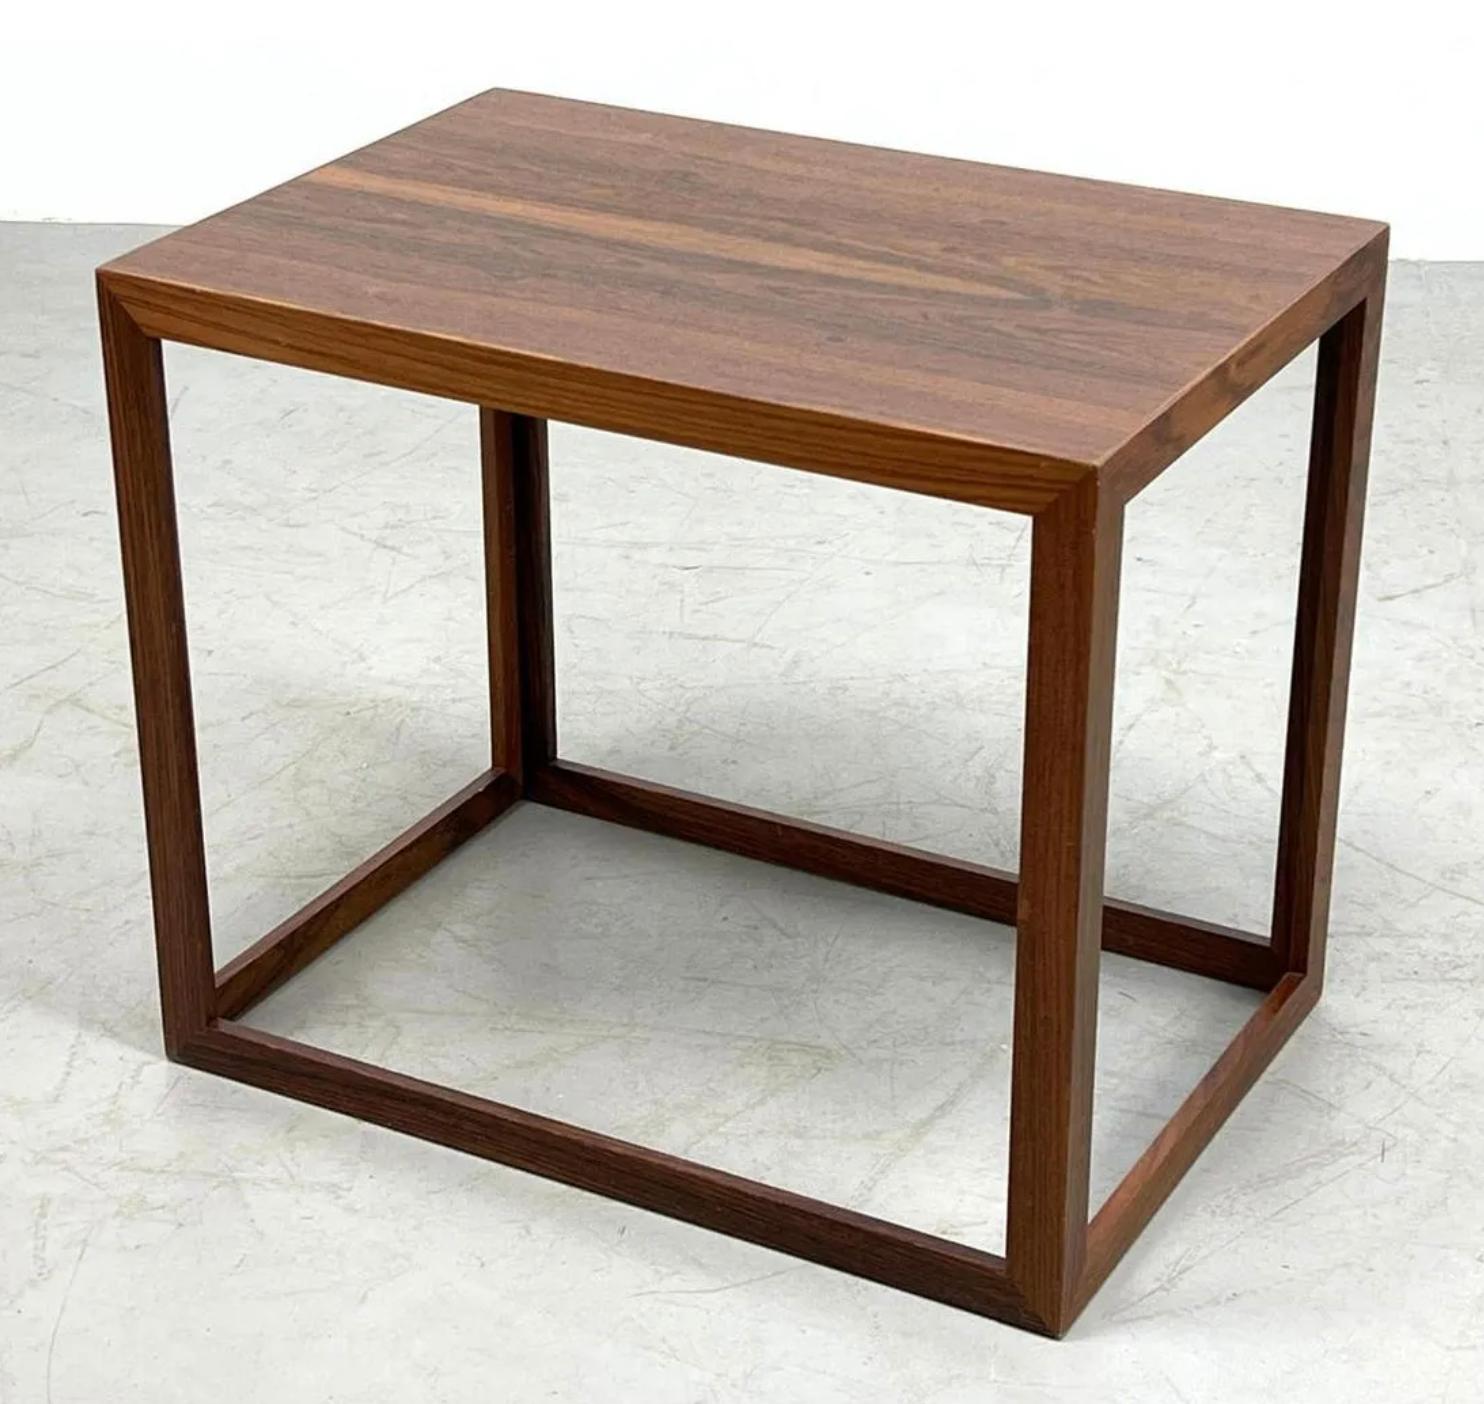 Table moderne danoise en bois de rose en forme de cube ouvert. 

Cette table d'appoint est un travail de qualité, tant au niveau des matériaux que de l'artisanat, avec une géométrie et une symétrie uniques. La table est une belle coupe de bois de